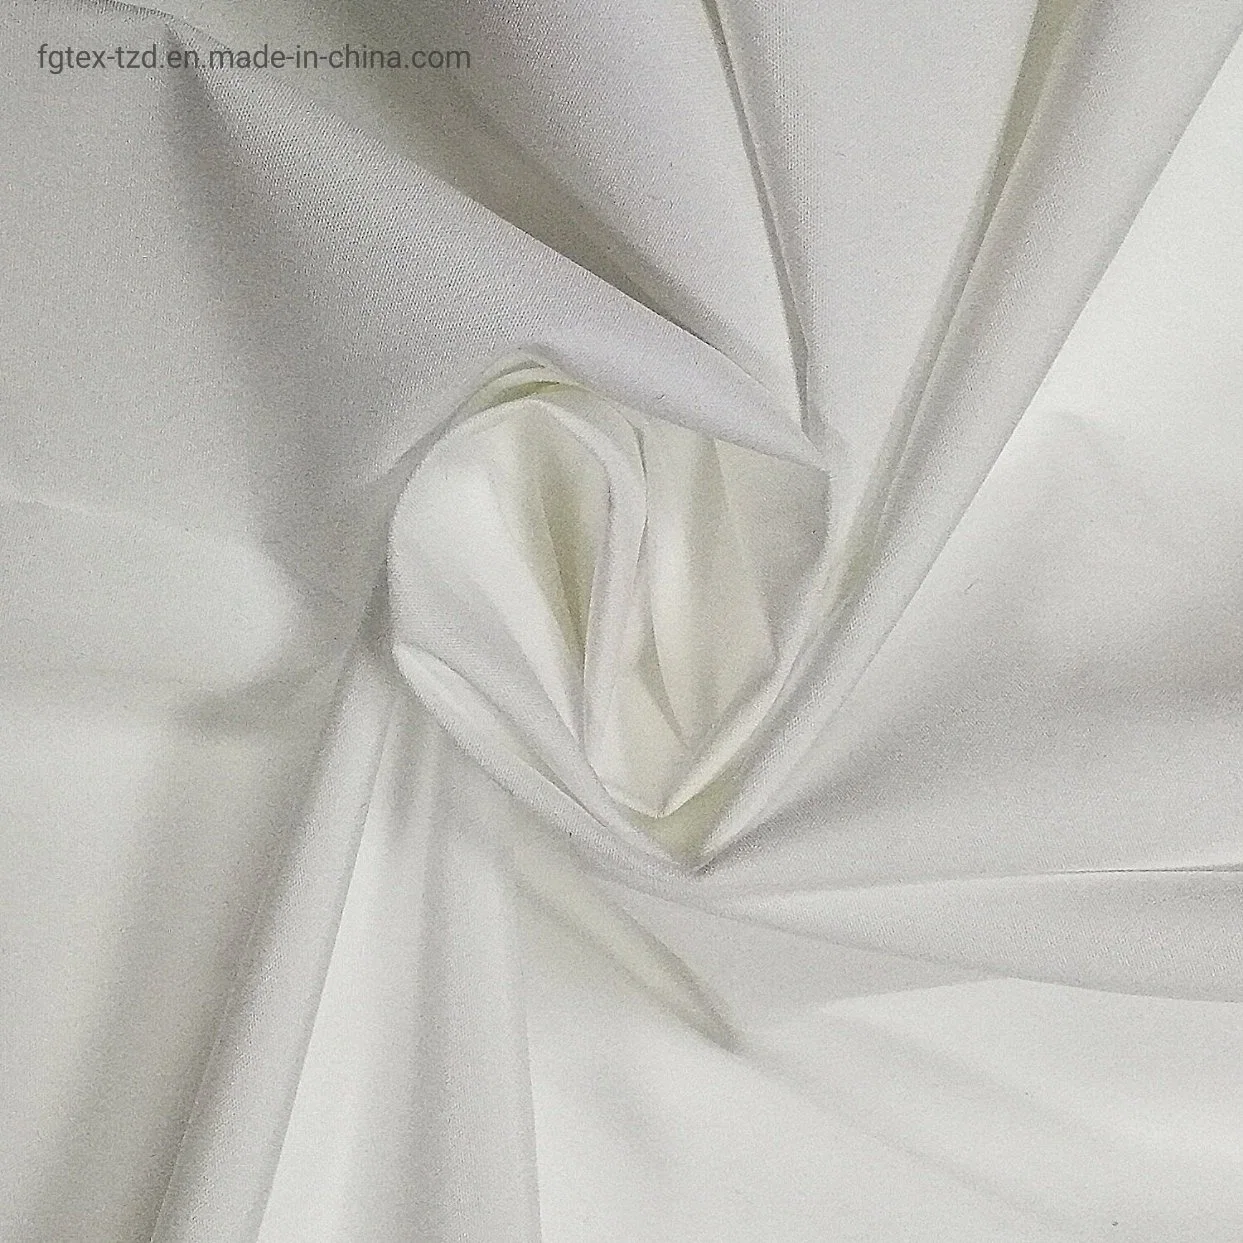 tissu de Pongee 300t avec revêtement PTFE tissus de protection médicale-Fgtex® -fonctionnels Tissus en polyester recyclé et en nylon recyclé